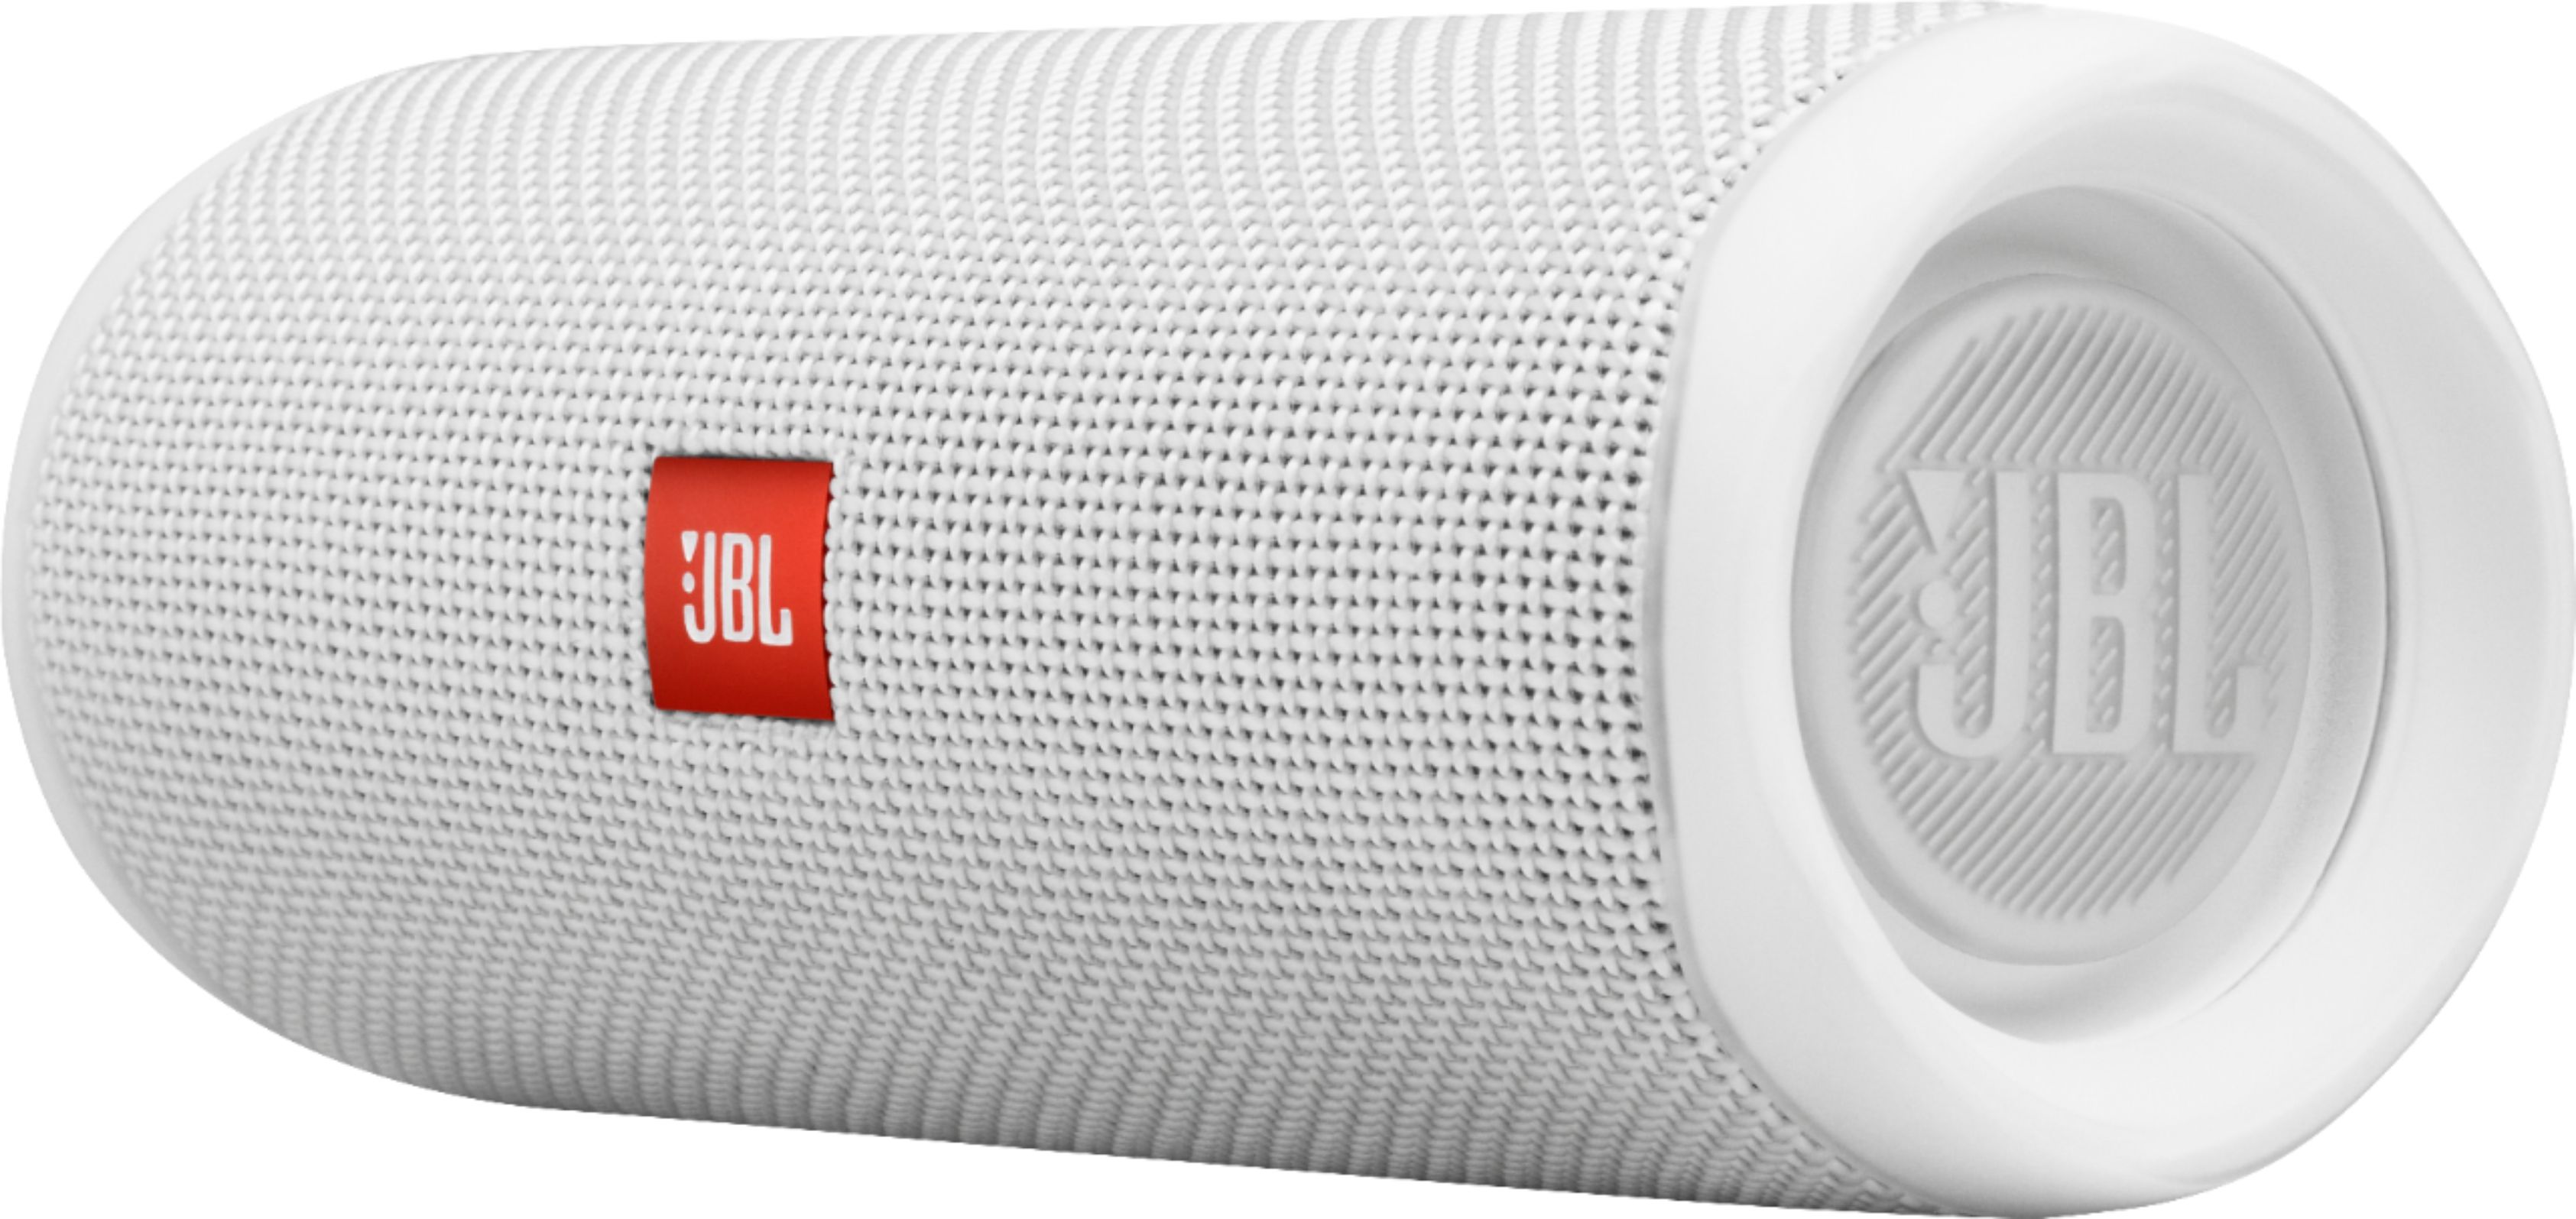 JBL Pulse 5 Portable Bluetooth Speaker Wireless Water ploof New Release Gift